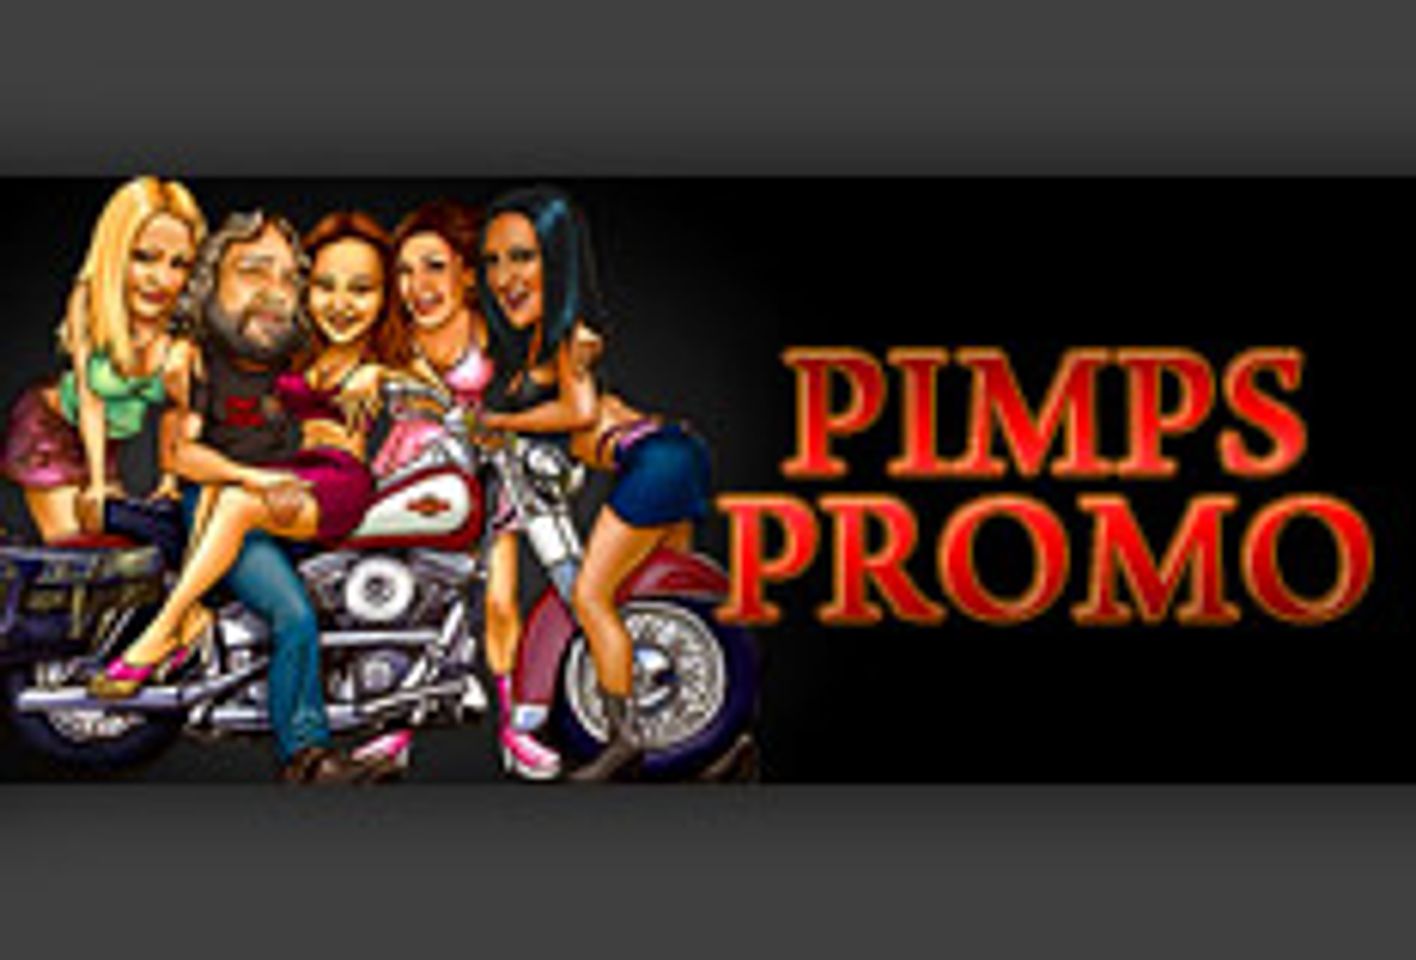 PimpsPromo.com Set To Attend, Photograph The Phoenix Forum